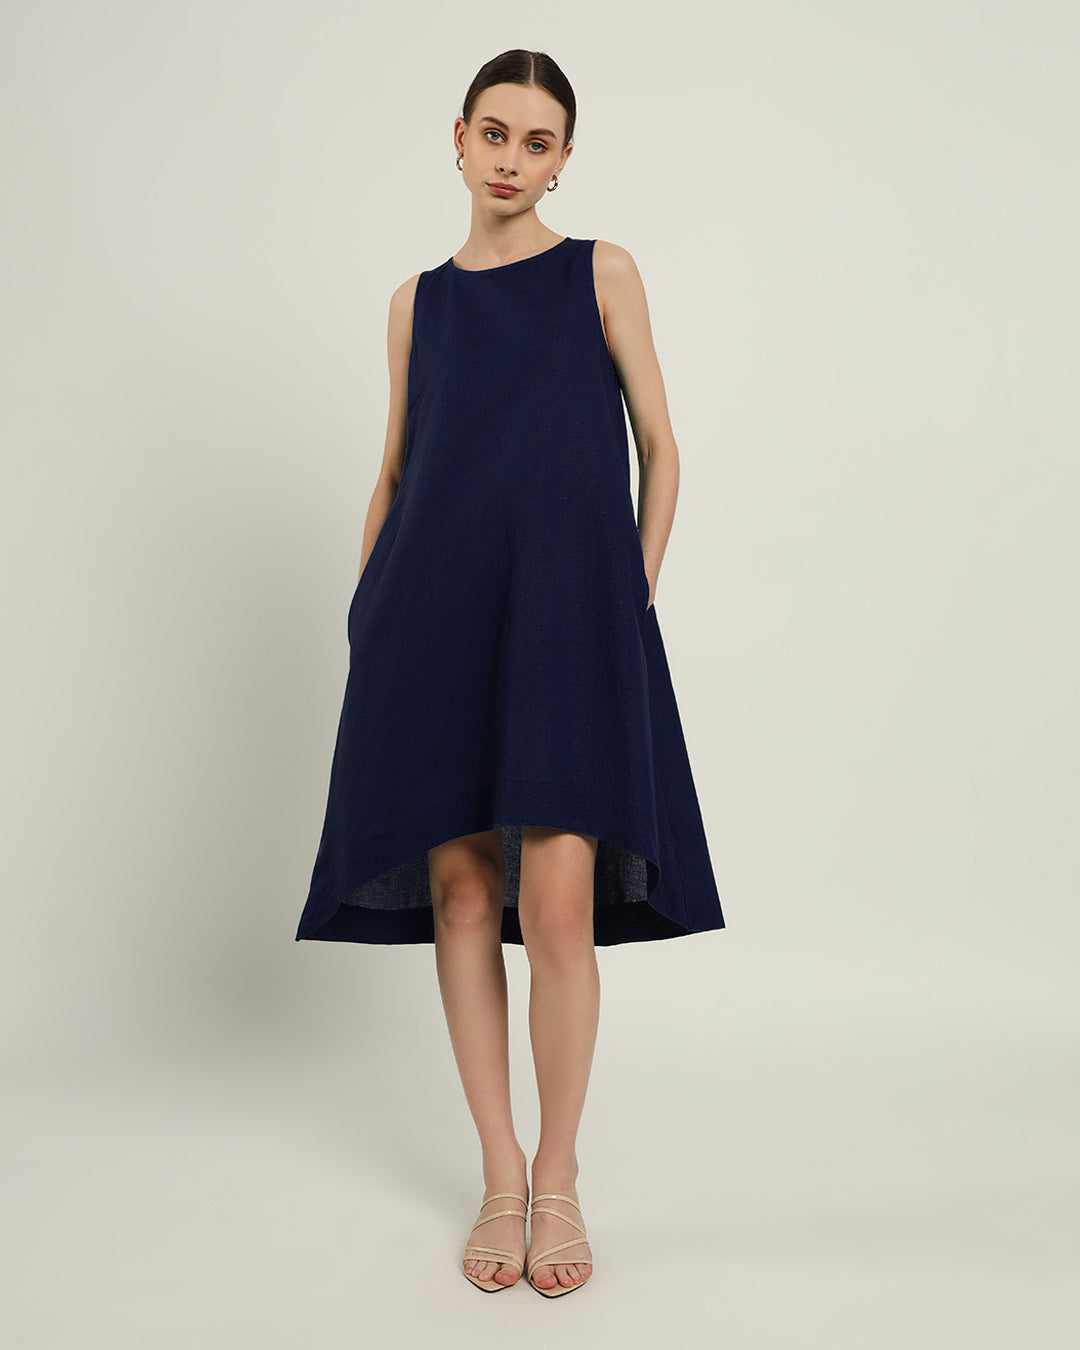 The Odesa Daisy Midnight Blue Linen Dress